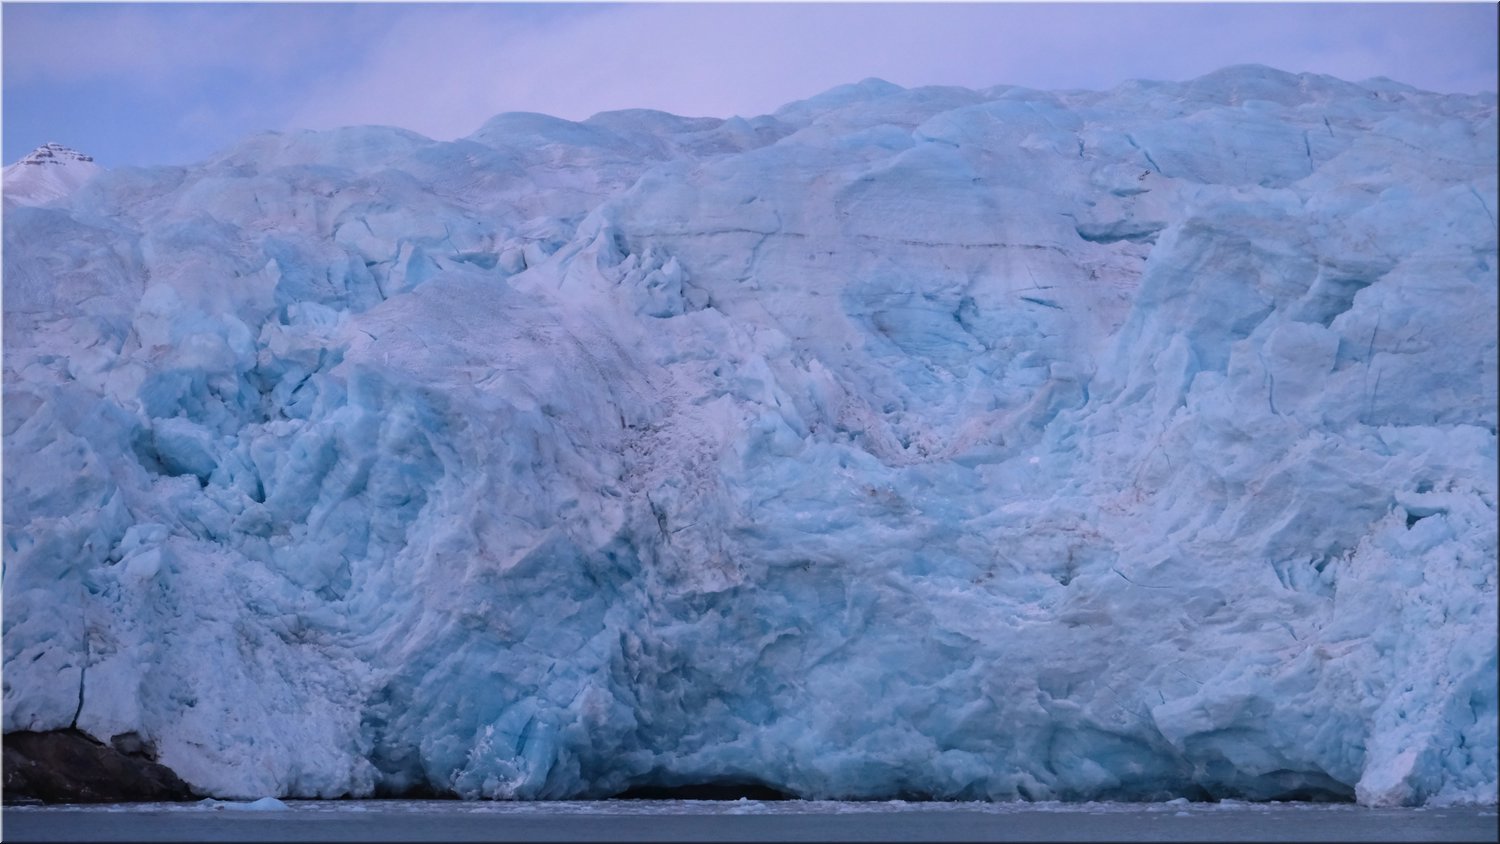 10211025-1537 Nordenskiold glacier at dusk DSCF1278;Martin.JPG